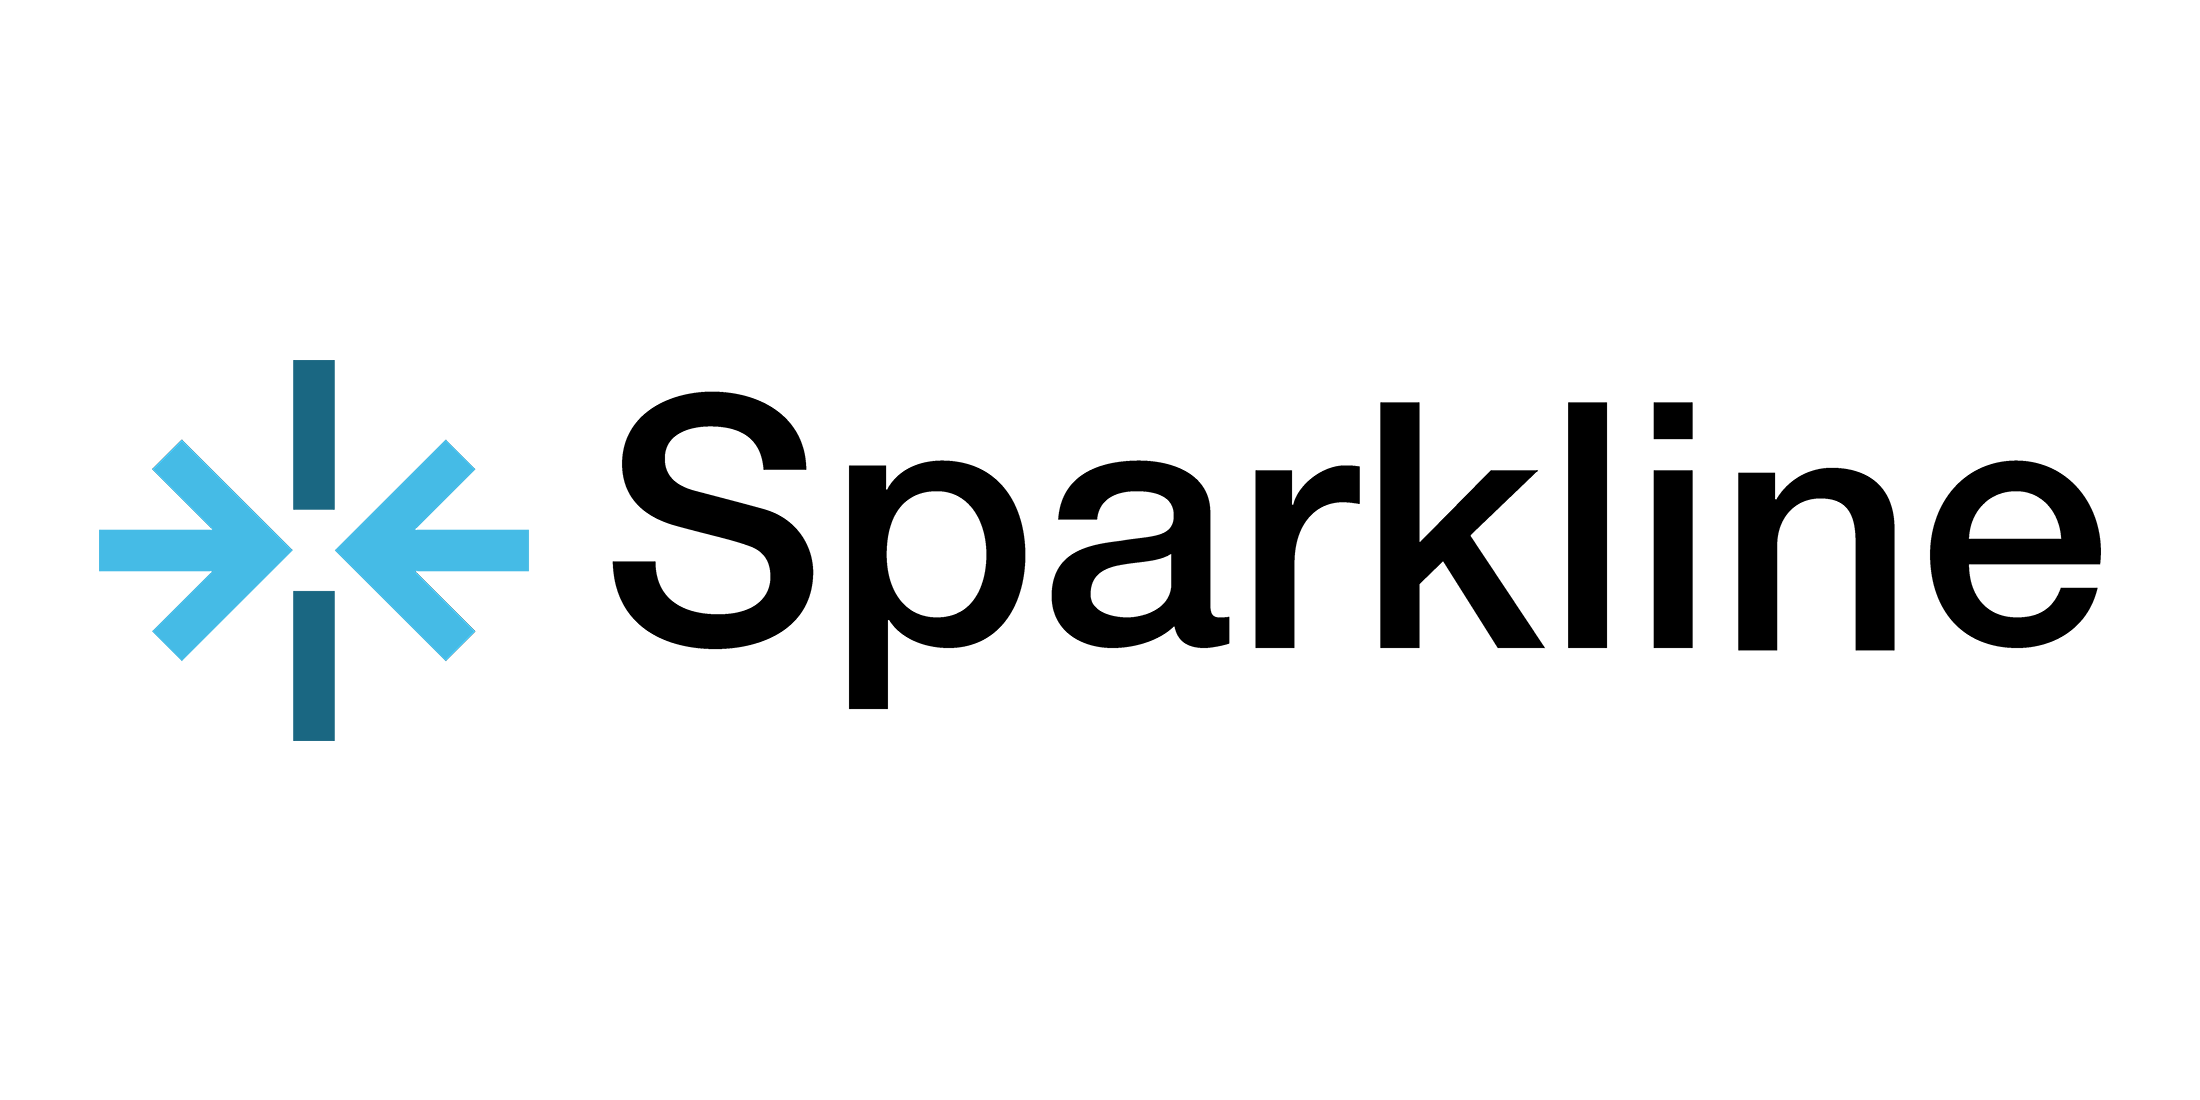 sparkline-logo-black-text-updated-july2020-2k480.png